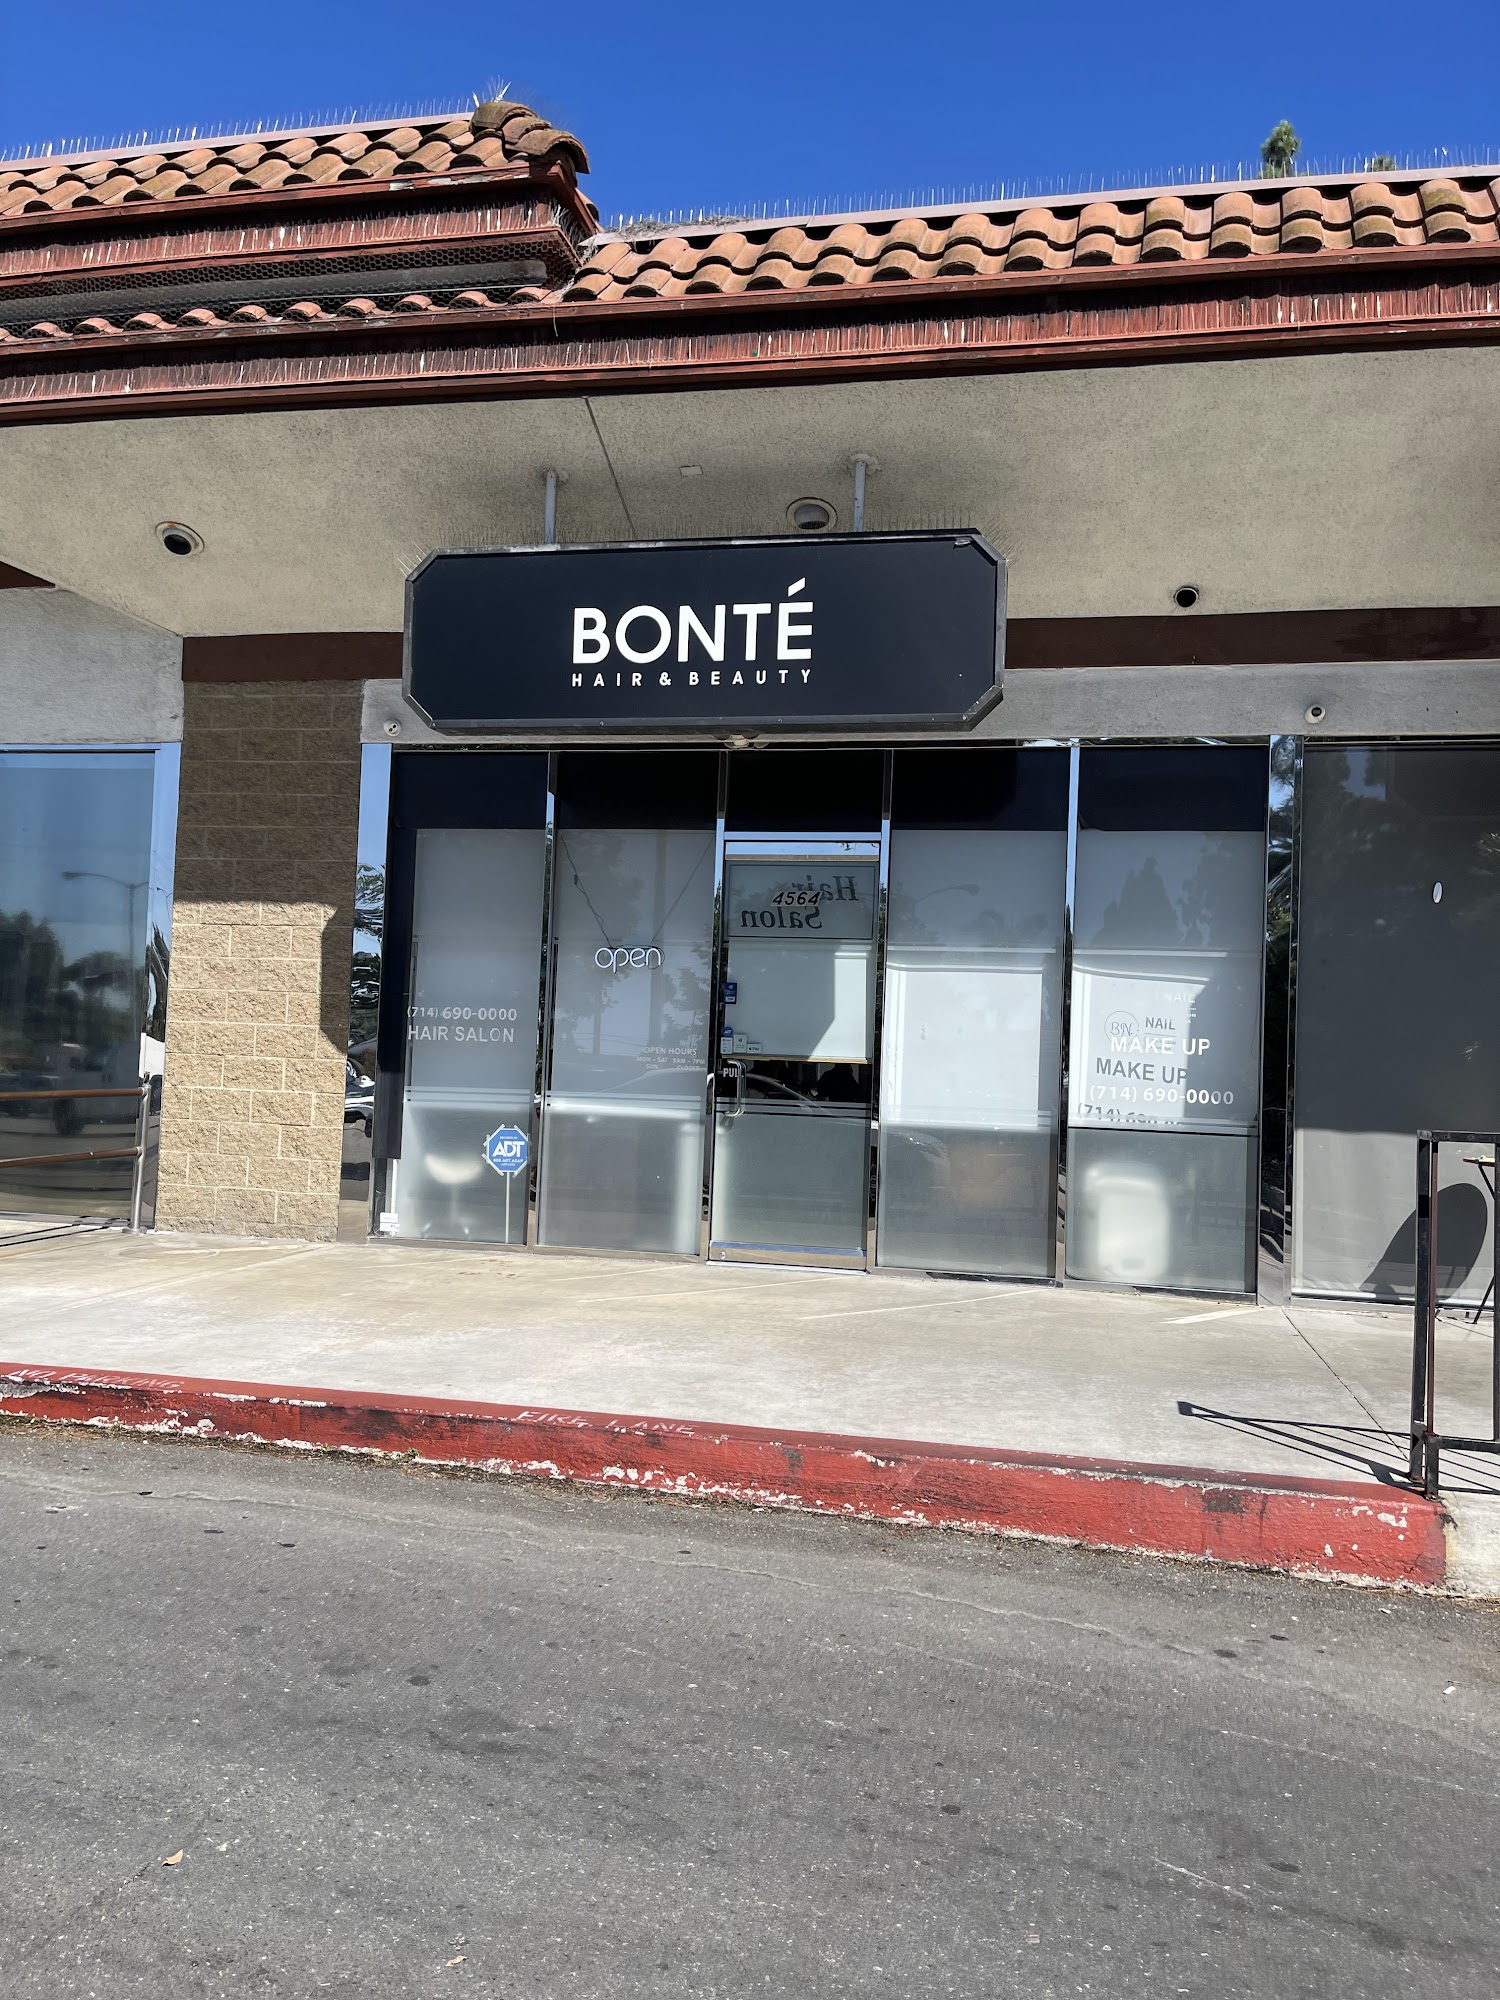 Bonté Hair & Beauty